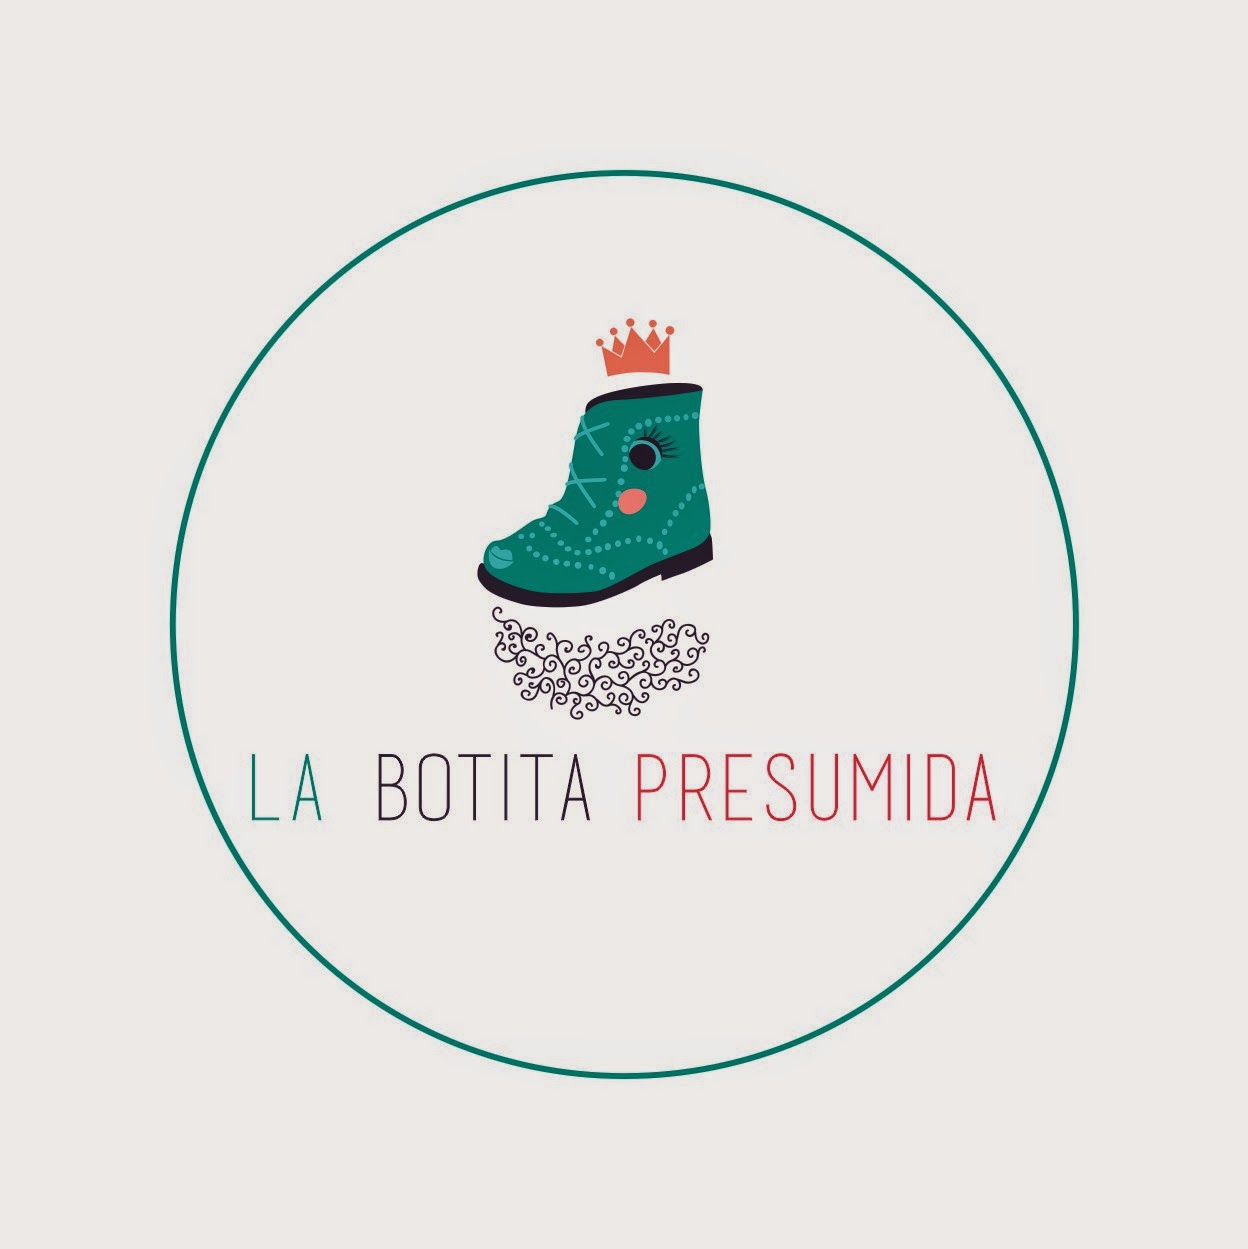 branding-logotipo-design-diseño-la-botita-presumida-zapateria-complementos-saron-tienda-niños-azul-rosa-bota-zapato-verde-ballena-elefante-nubes-coche-casas-botas-publicidad